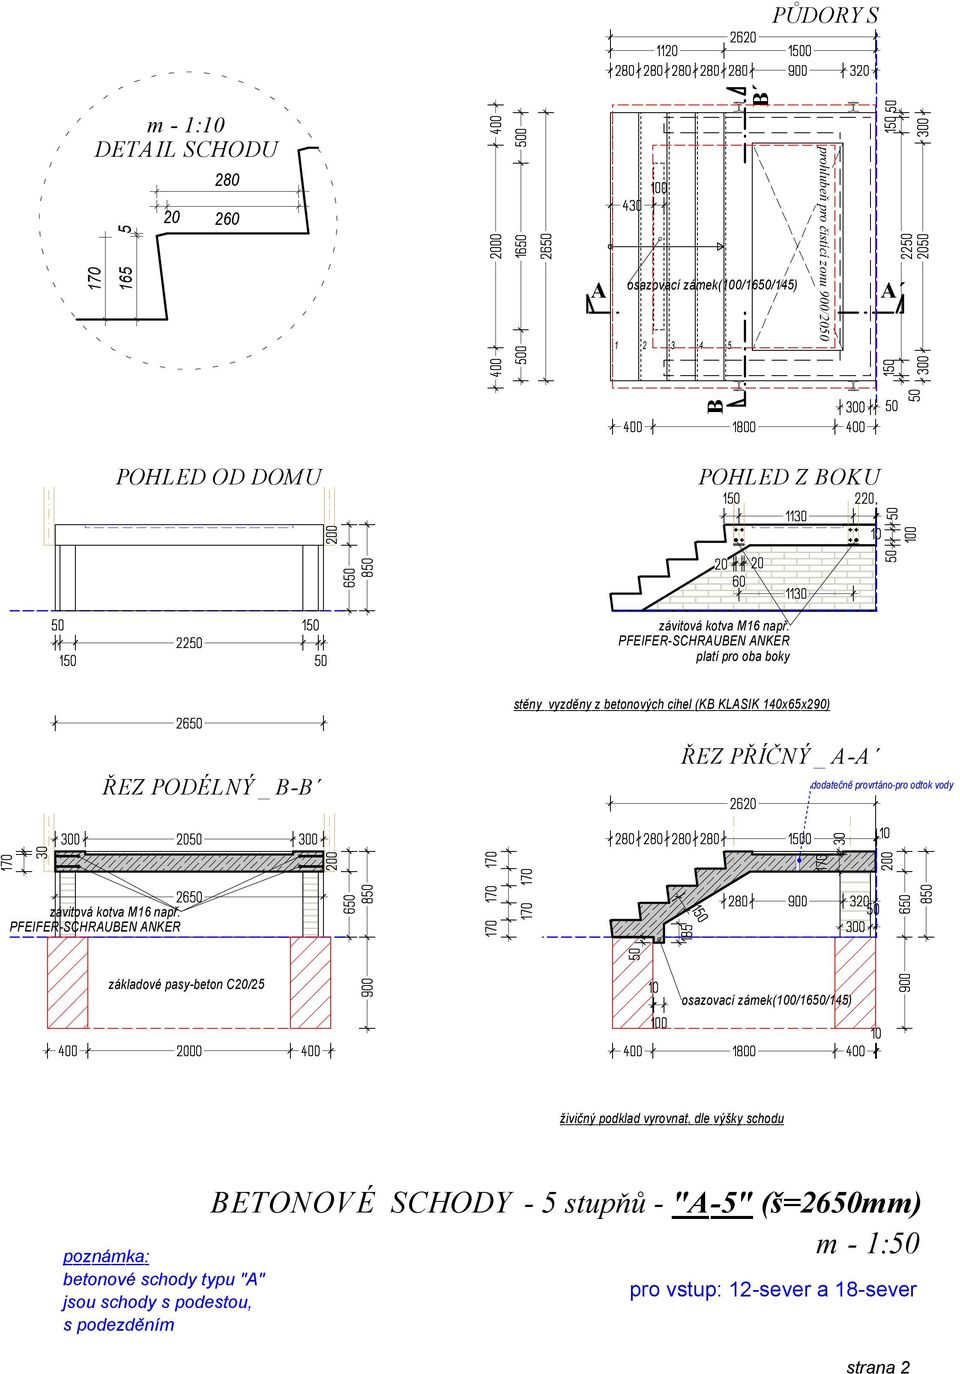 základové pasy-beton C/2 betonové schody typu "" ETONOVÉ SCHODY